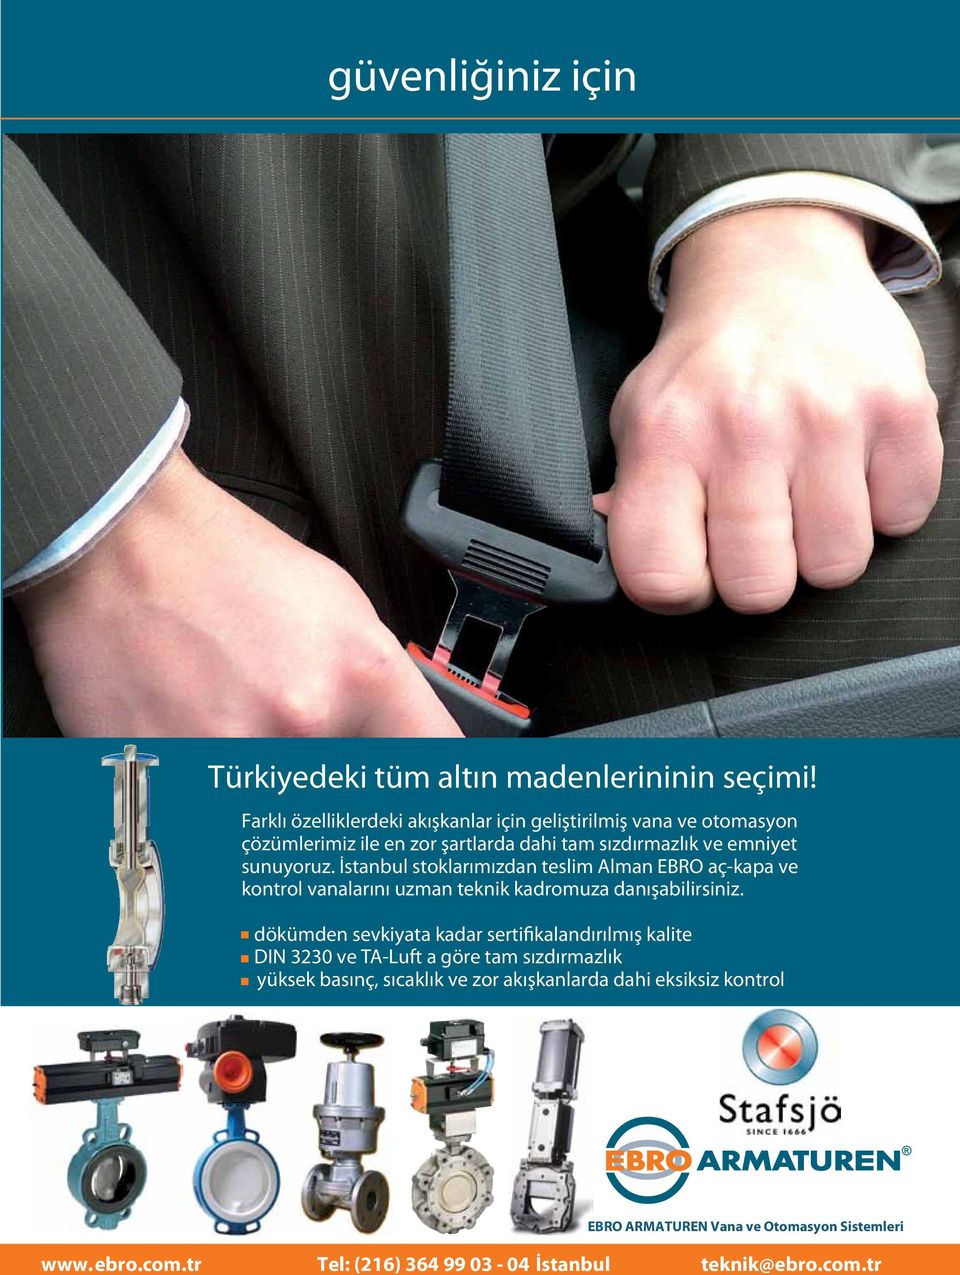 İstanbul stoklarımızdan teslim Alman EBRO aç-kapa ve kontrol vanalarını uzman teknik kadromuza danışabilirsiniz.